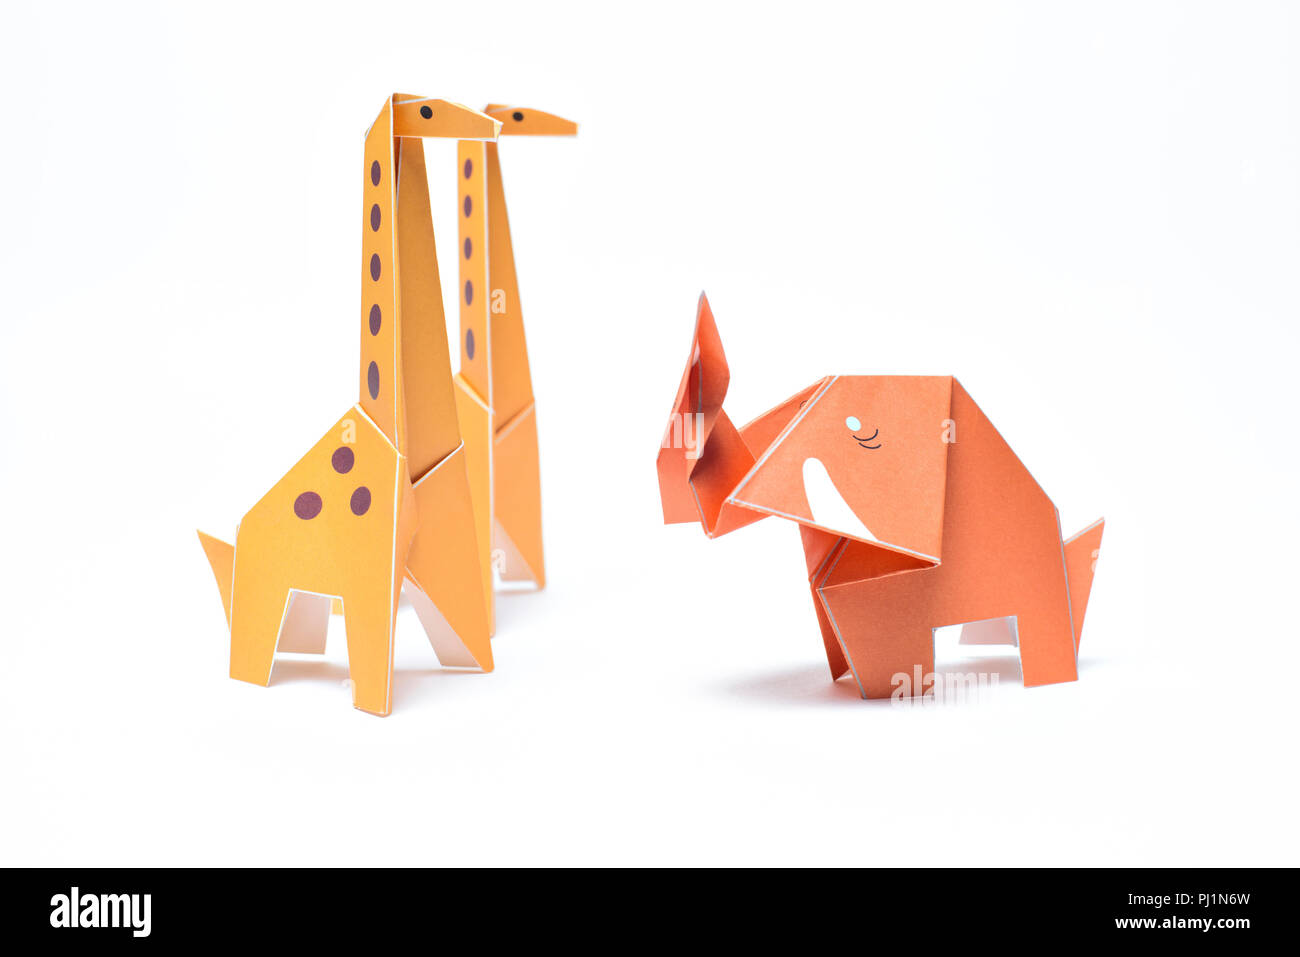 Trois animaux origami se tiennent sur un fond blanc, deux girafes et d'un seul éléphant Banque D'Images